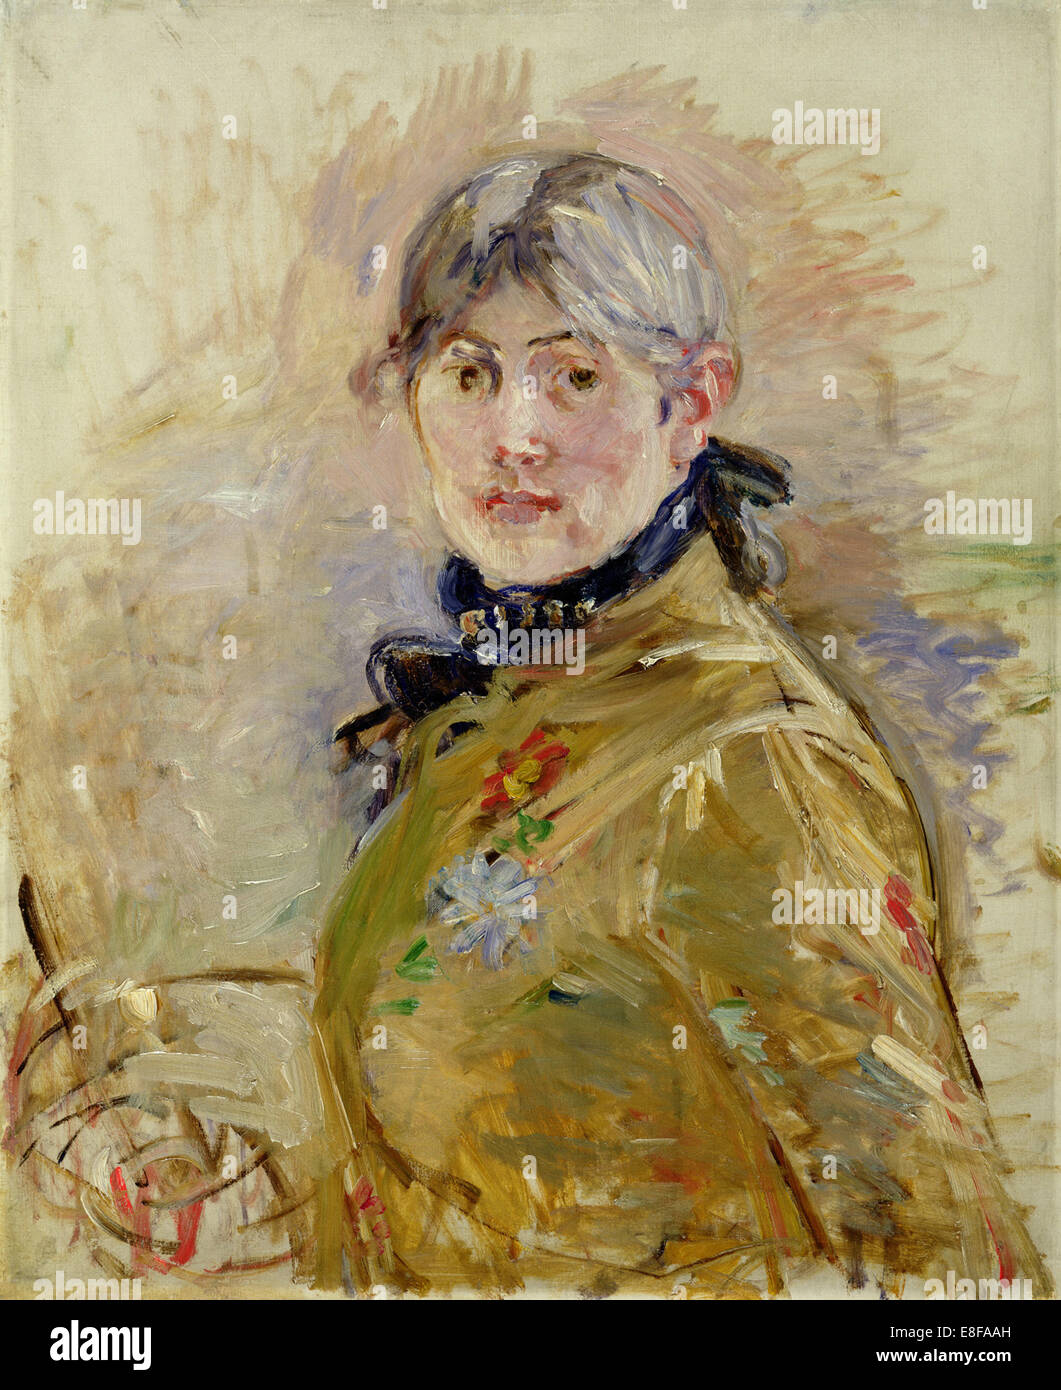 Autoritratto. Artista: Morisot, Berthe (1841-1895) Foto Stock